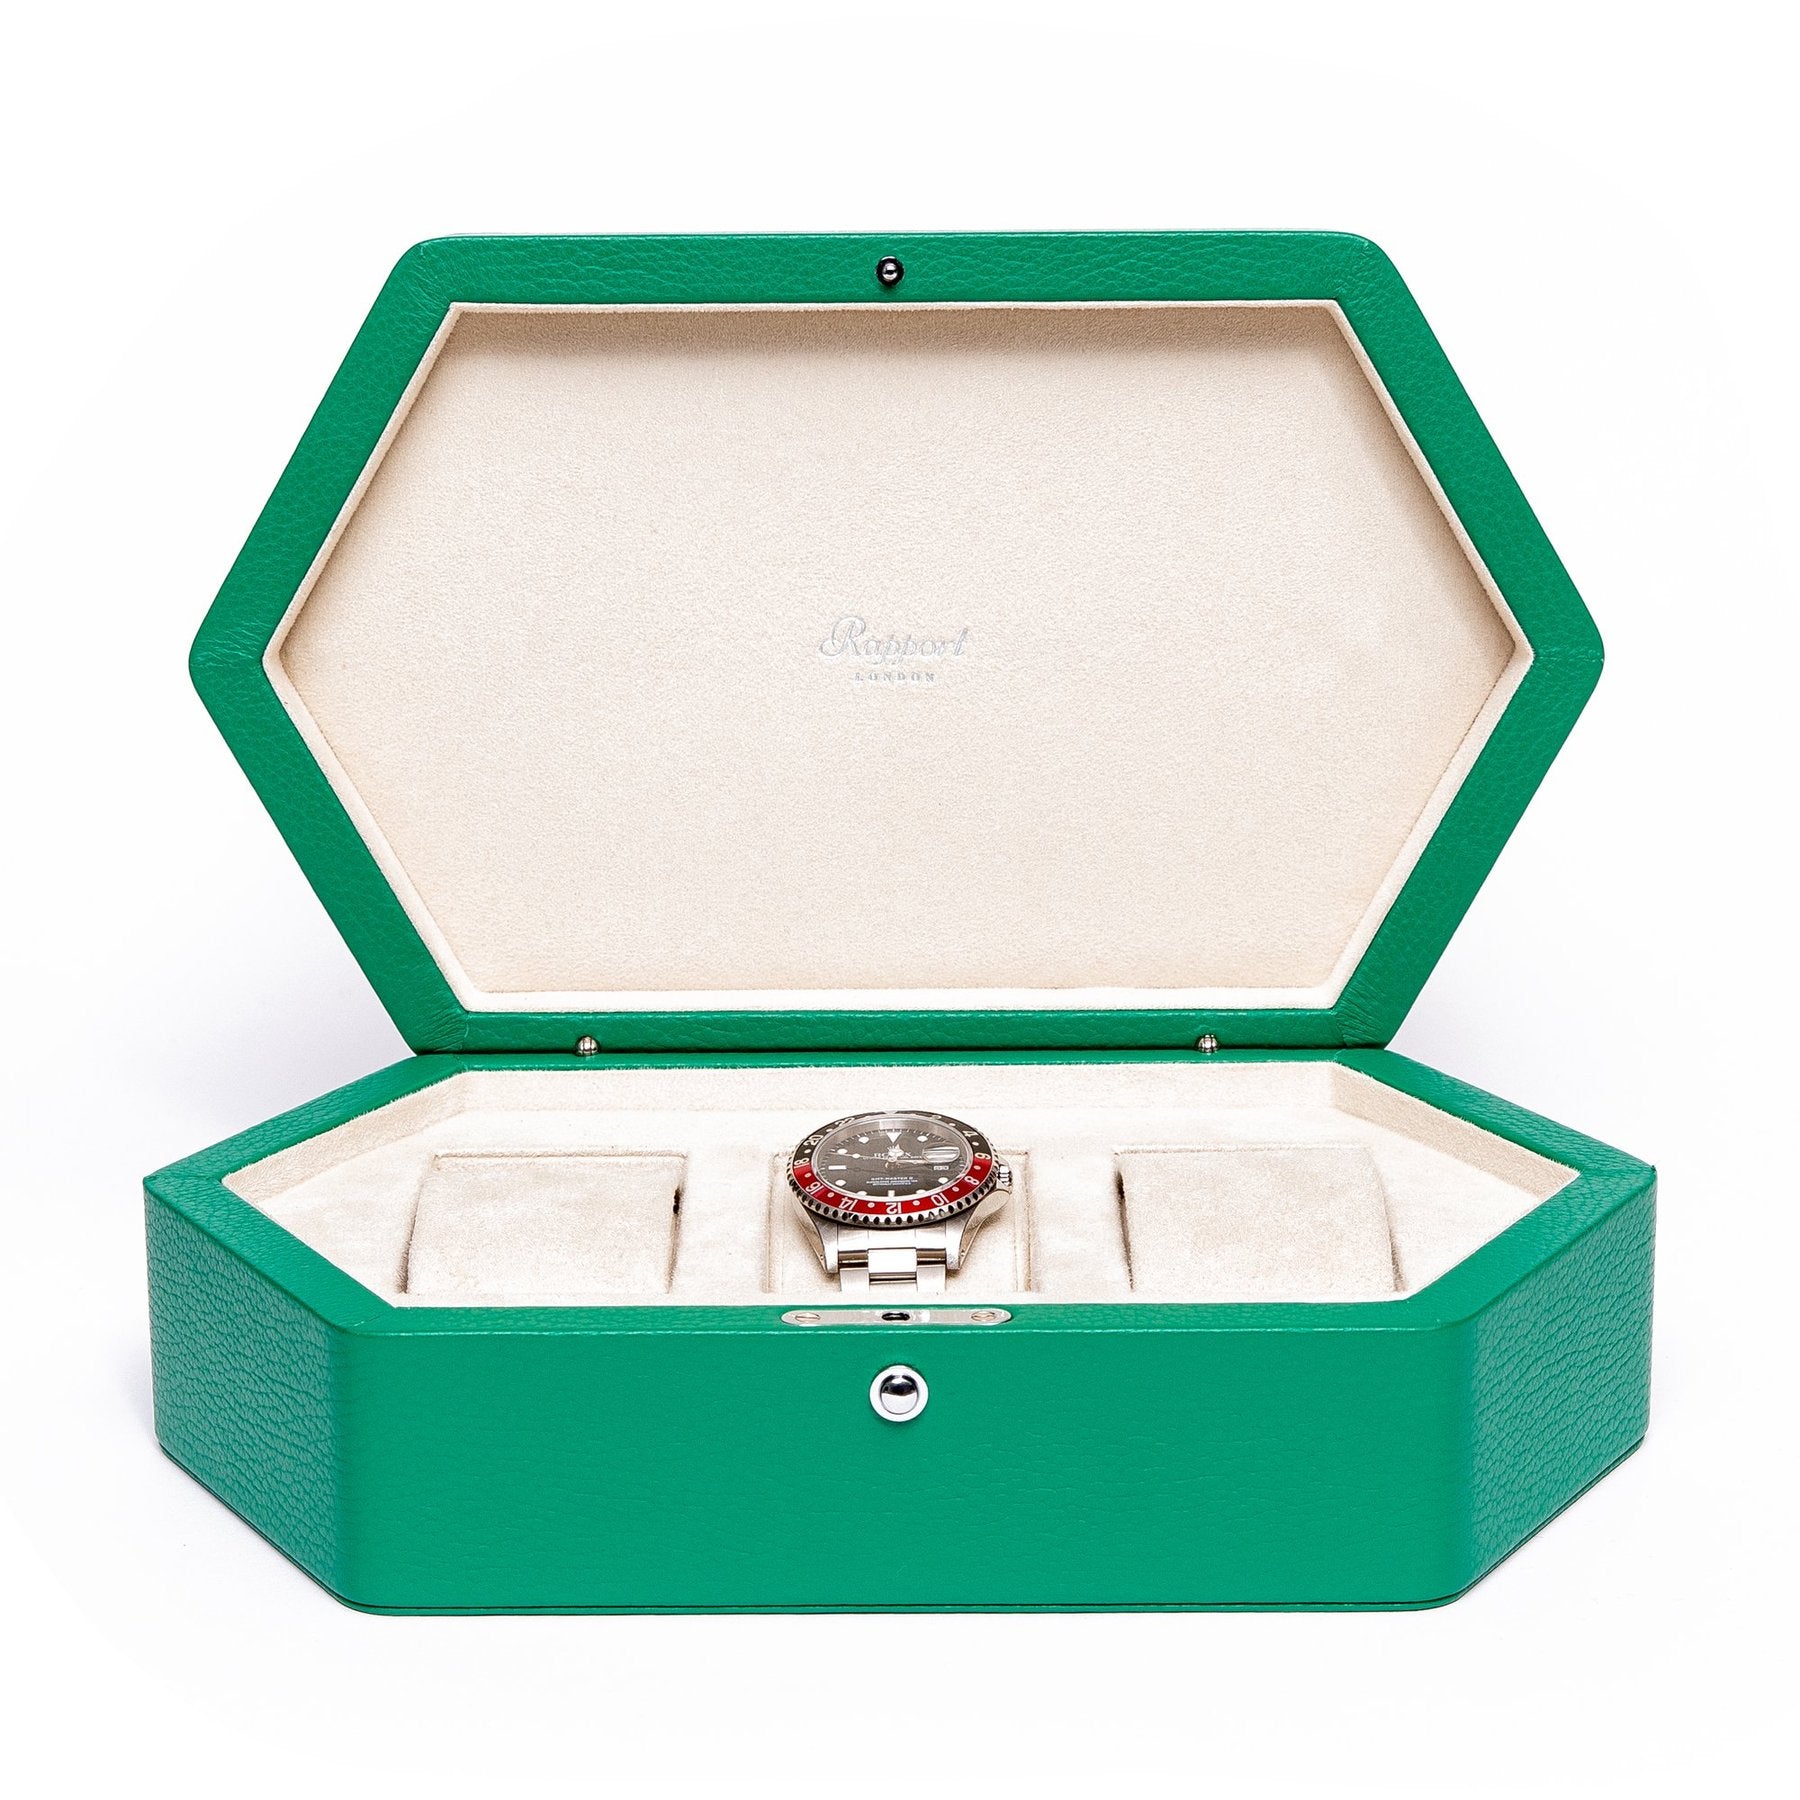 Rapport Portobello Watch Box in Green Leather TA44 - Watchwindersplus